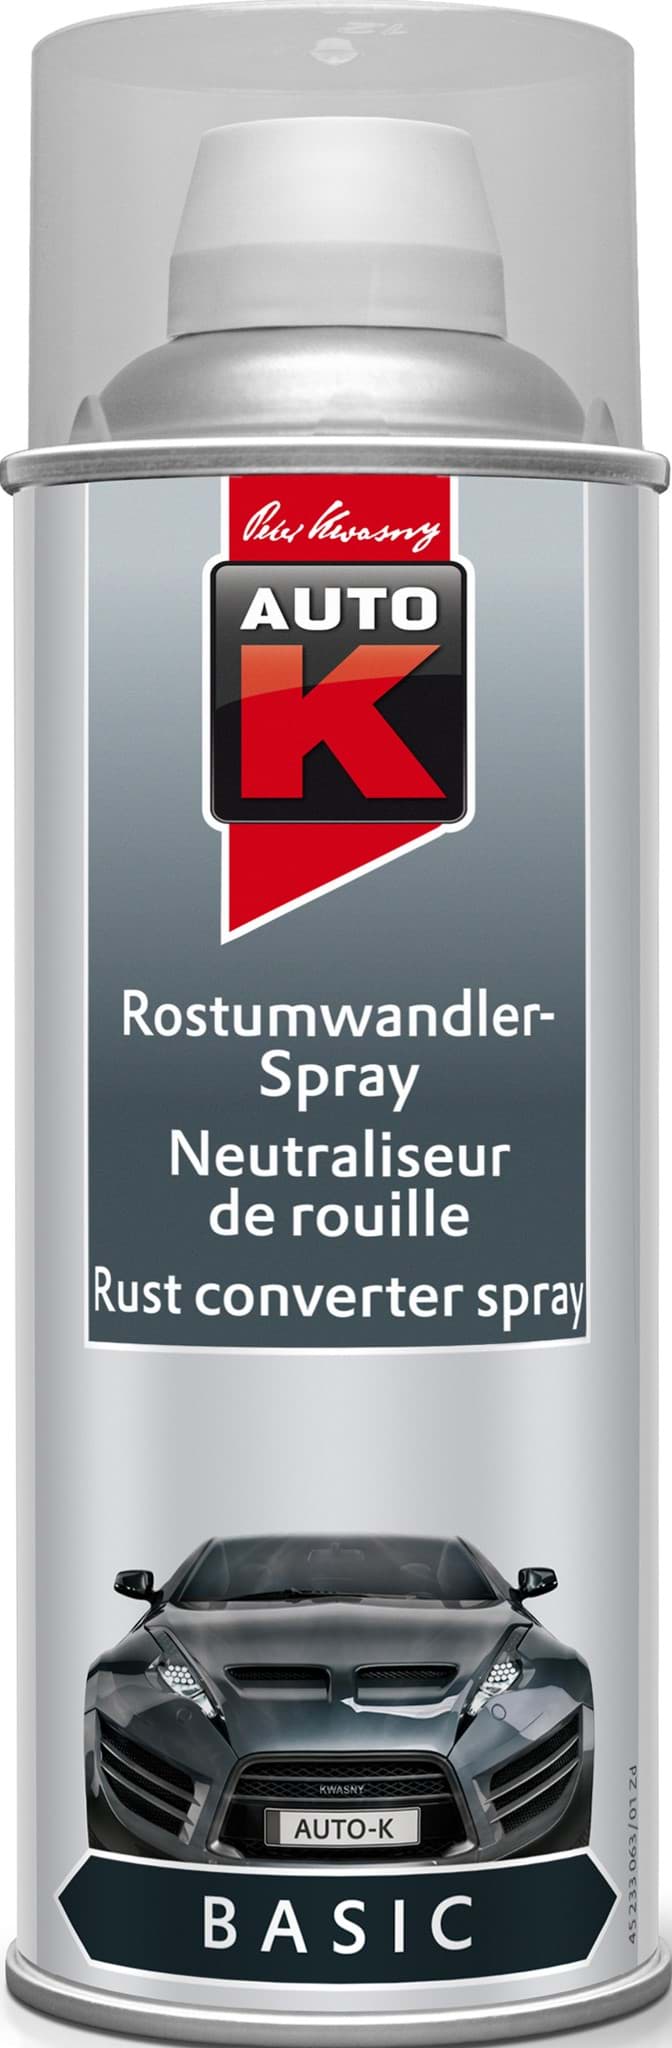 Изображение AutoK Rostumwandler und Epoxy-Grundierung Spray 400ml 233063